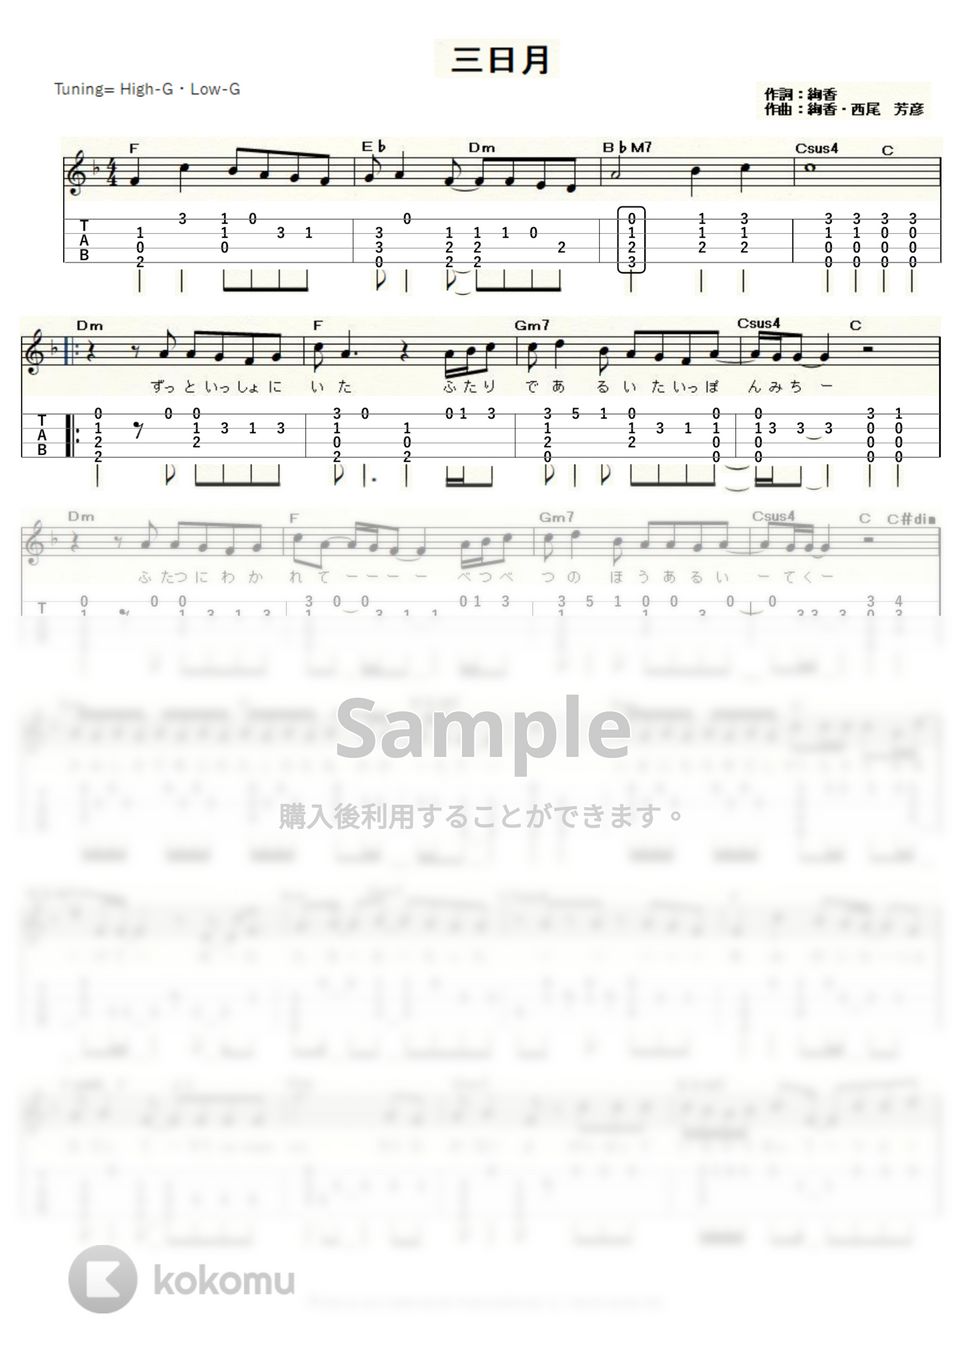 絢香 - 三日月 (ｳｸﾚﾚｿﾛ / High-G,Low-G / 中級) by ukulelepapa